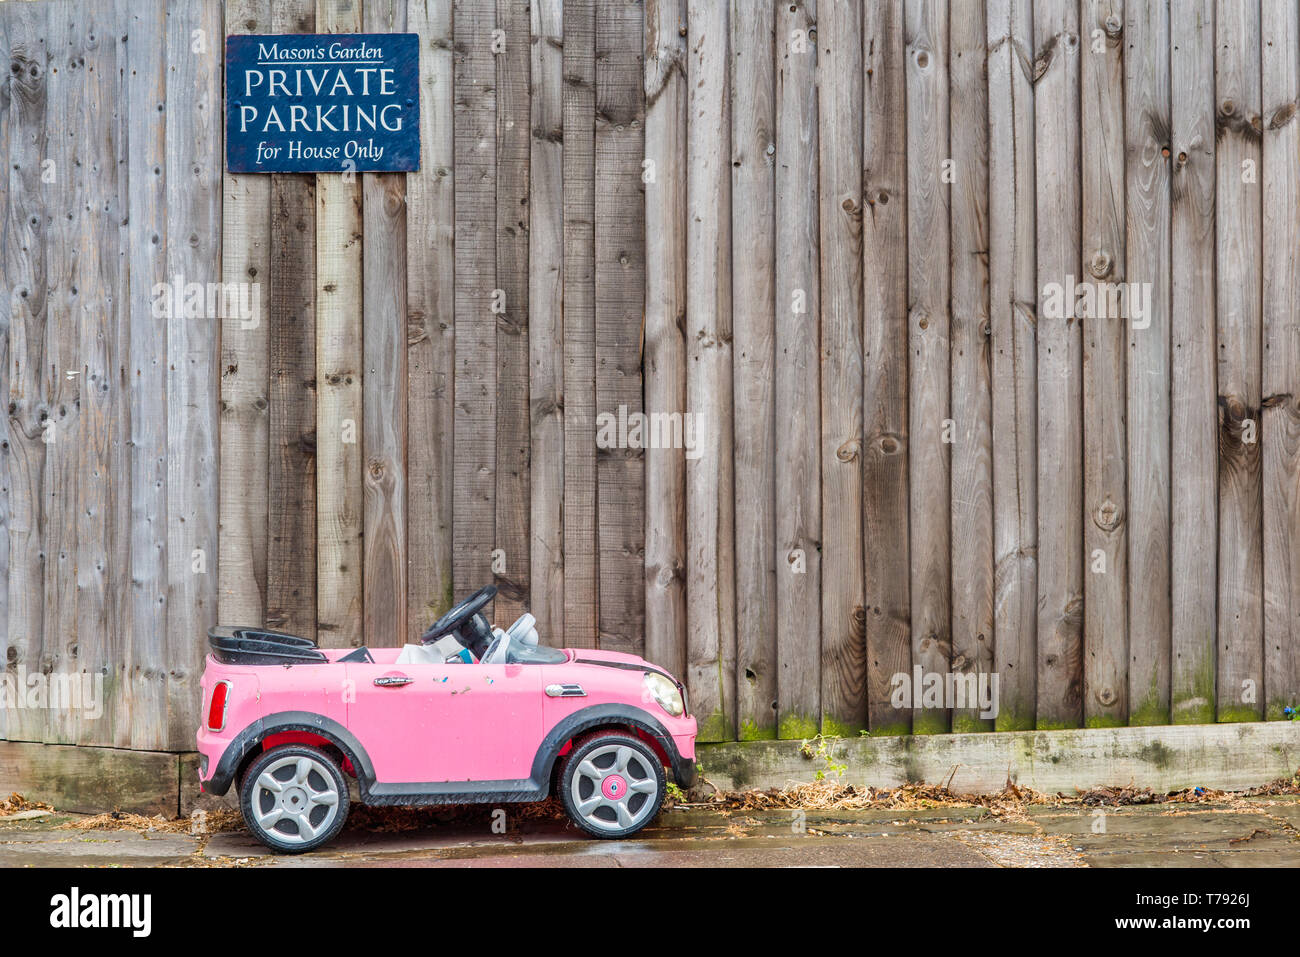 Immagine divertente di un piccolo bambino giocattolo auto parcheggiate al di sotto di parcheggio privato segno. Visto, Cambridge, Inghilterra. Foto Stock